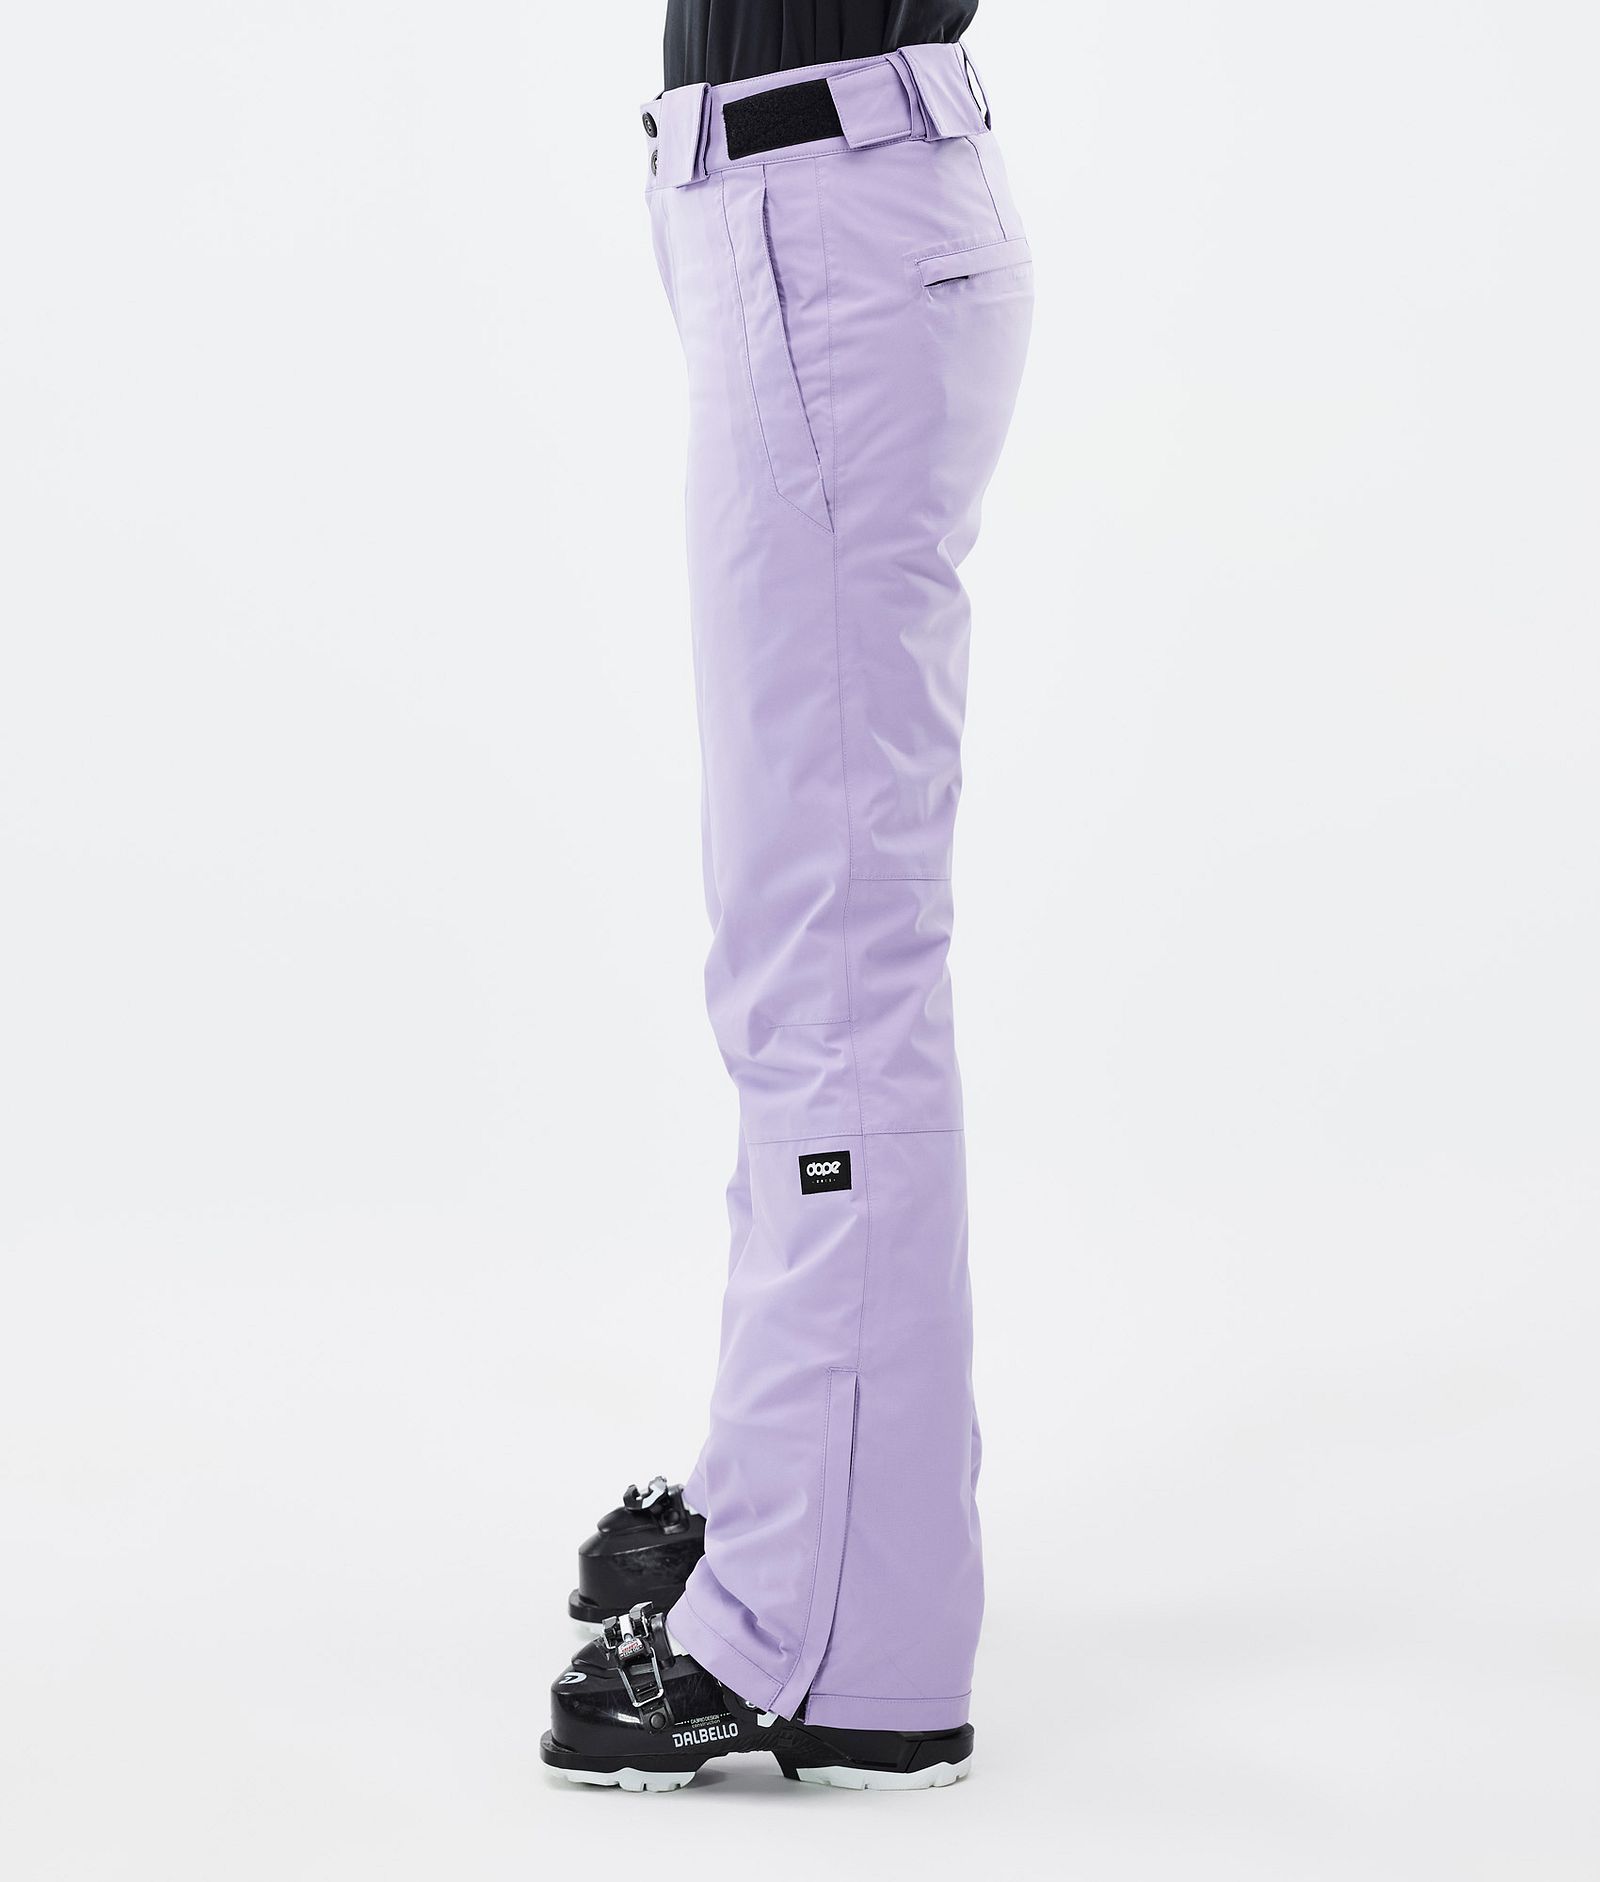 Con W Pantalones Esquí Mujer Faded Violet